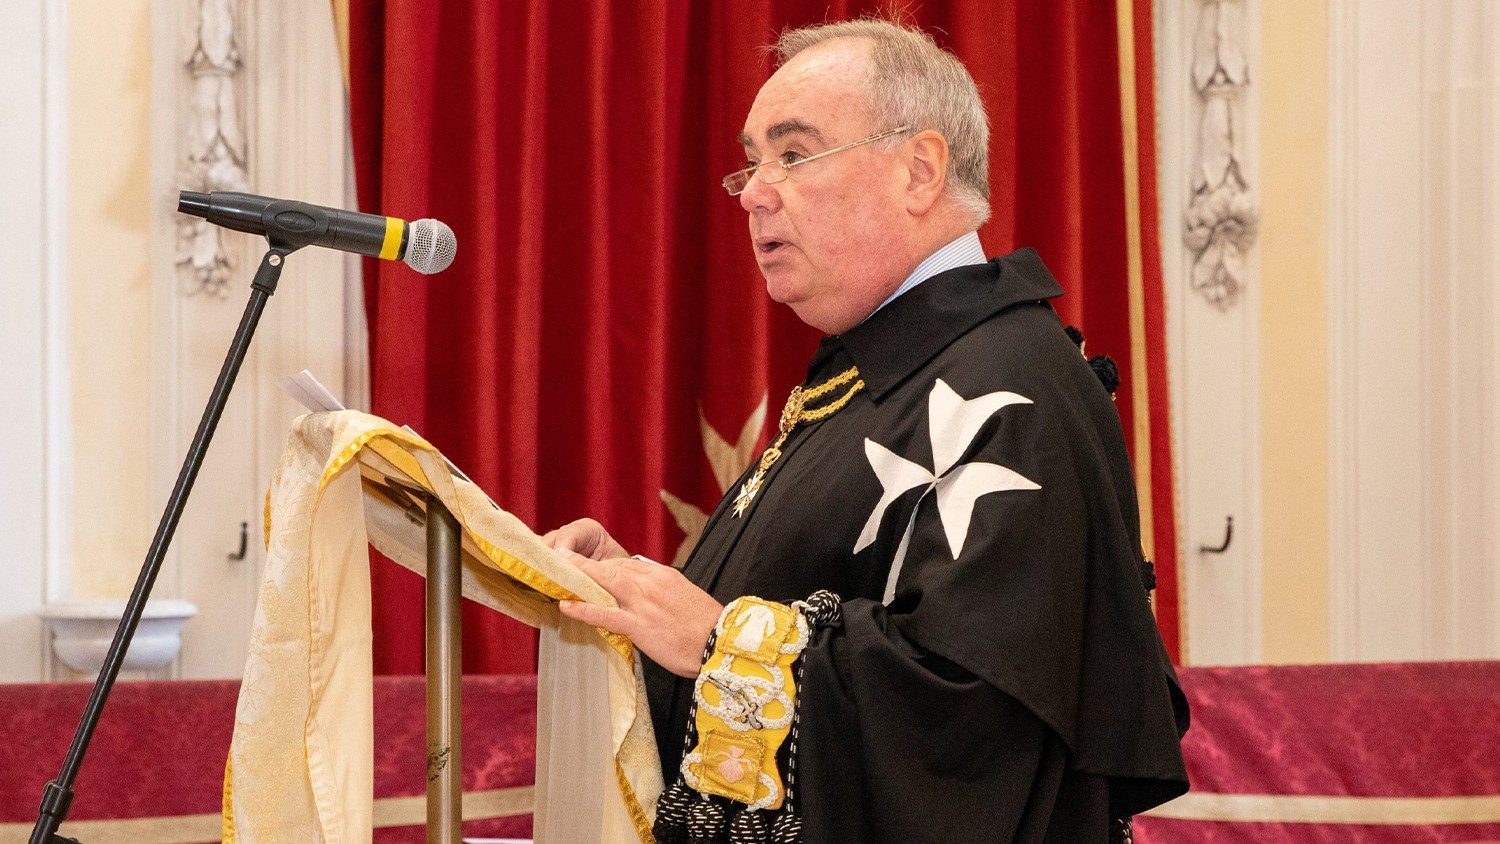 Папа назначил временным главой Мальтийского ордена канадца Джона Данлэпа